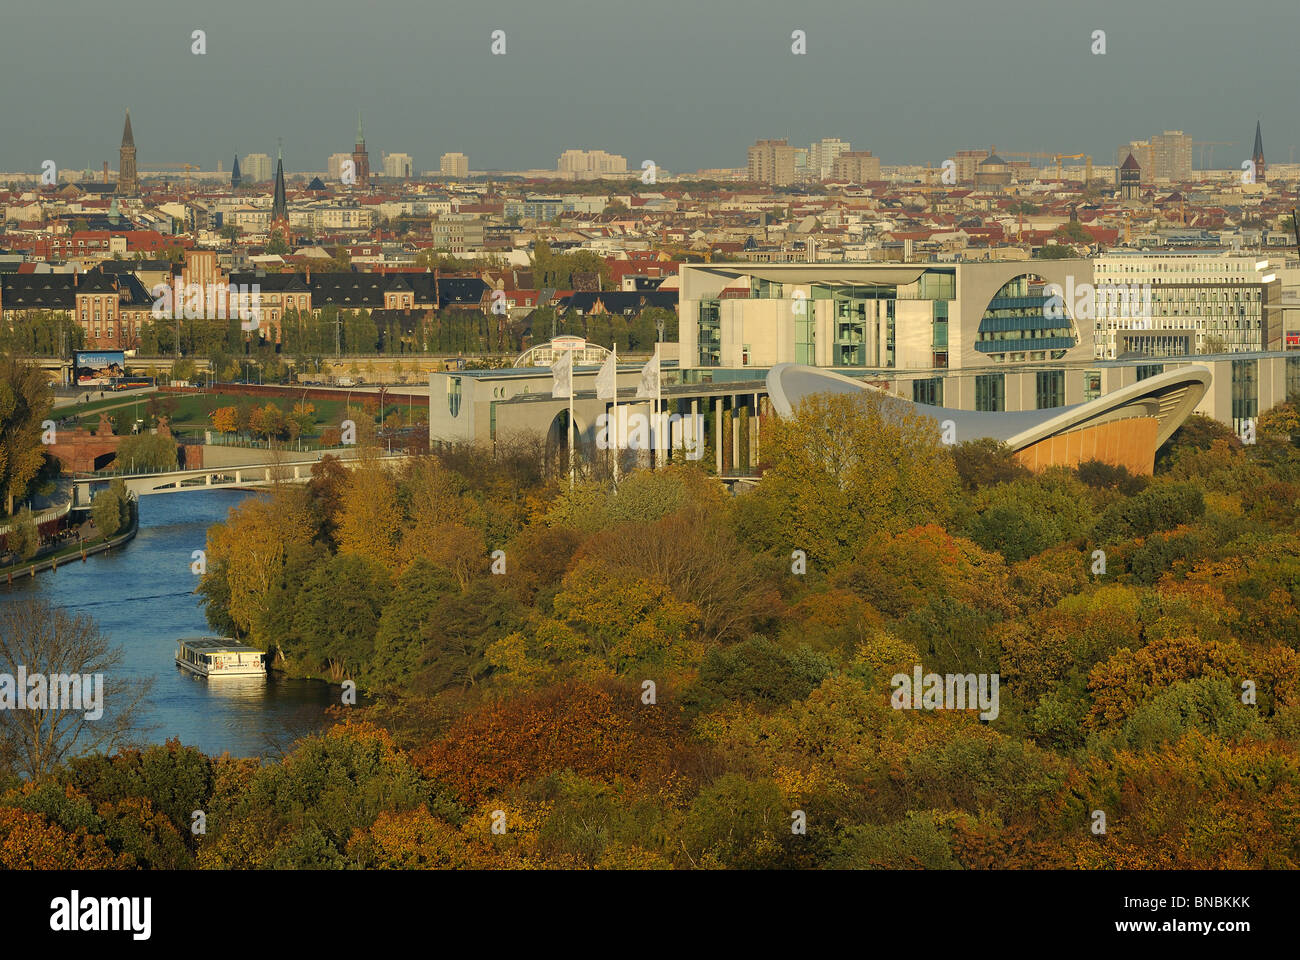 Grosser parc Tiergarten, vue de dessus, Chancellerie fédérale, Maison des Cultures du Monde, des toits de Berlin Mitte, Berlin, Allemagne Banque D'Images